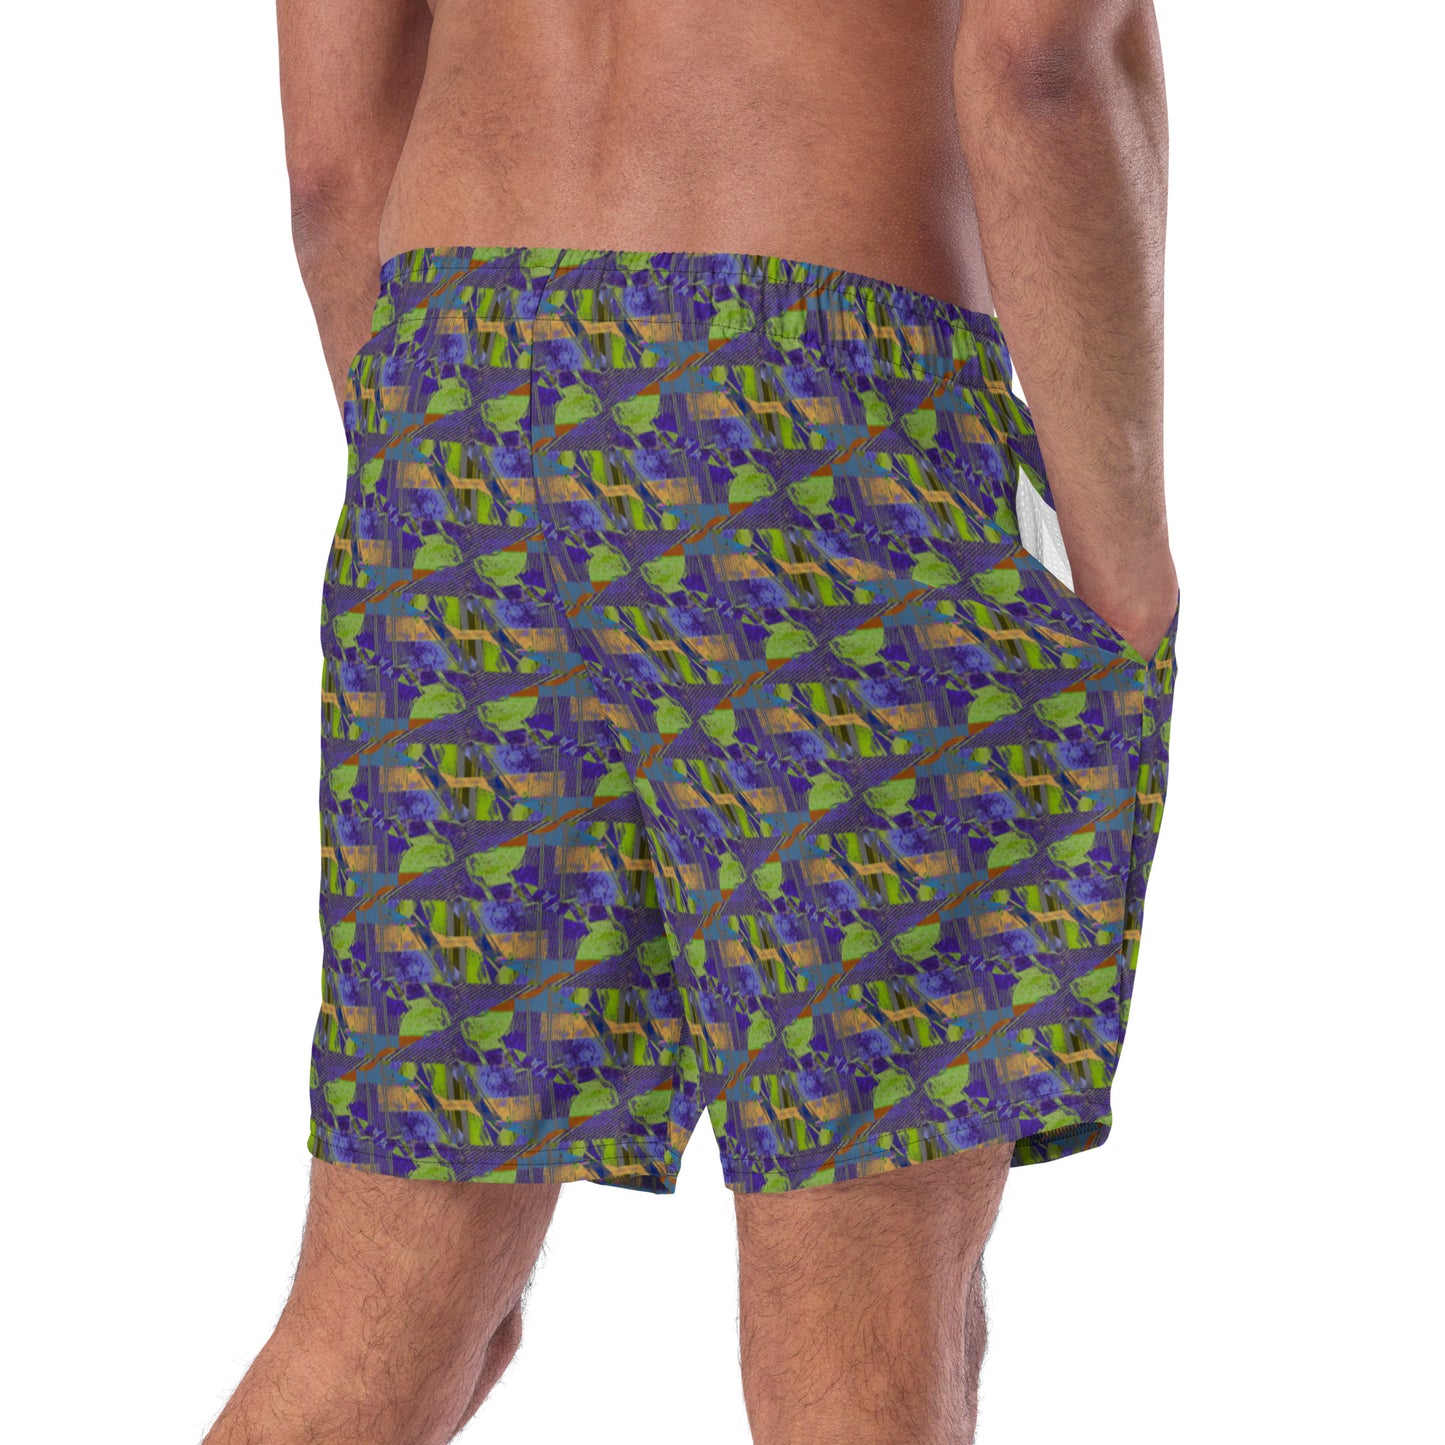 Sitka Men's swim trunks